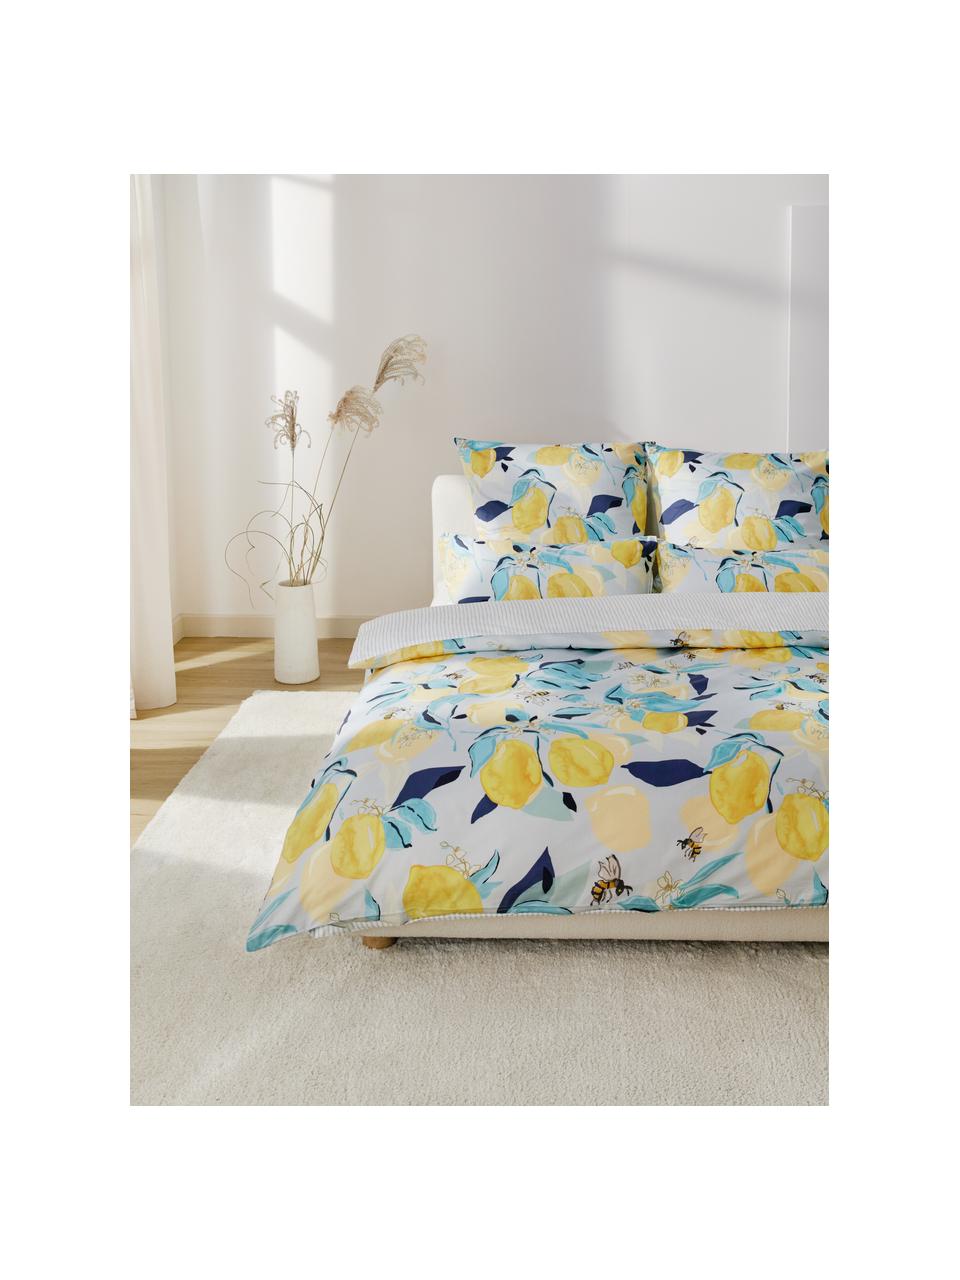 Obojstranná posteľná bielizeň z bavlneného saténu s citrónmi Garda, Biela, žltá, modrá, 135 x 200 cm + 1 vankúš 80 x 80 cm